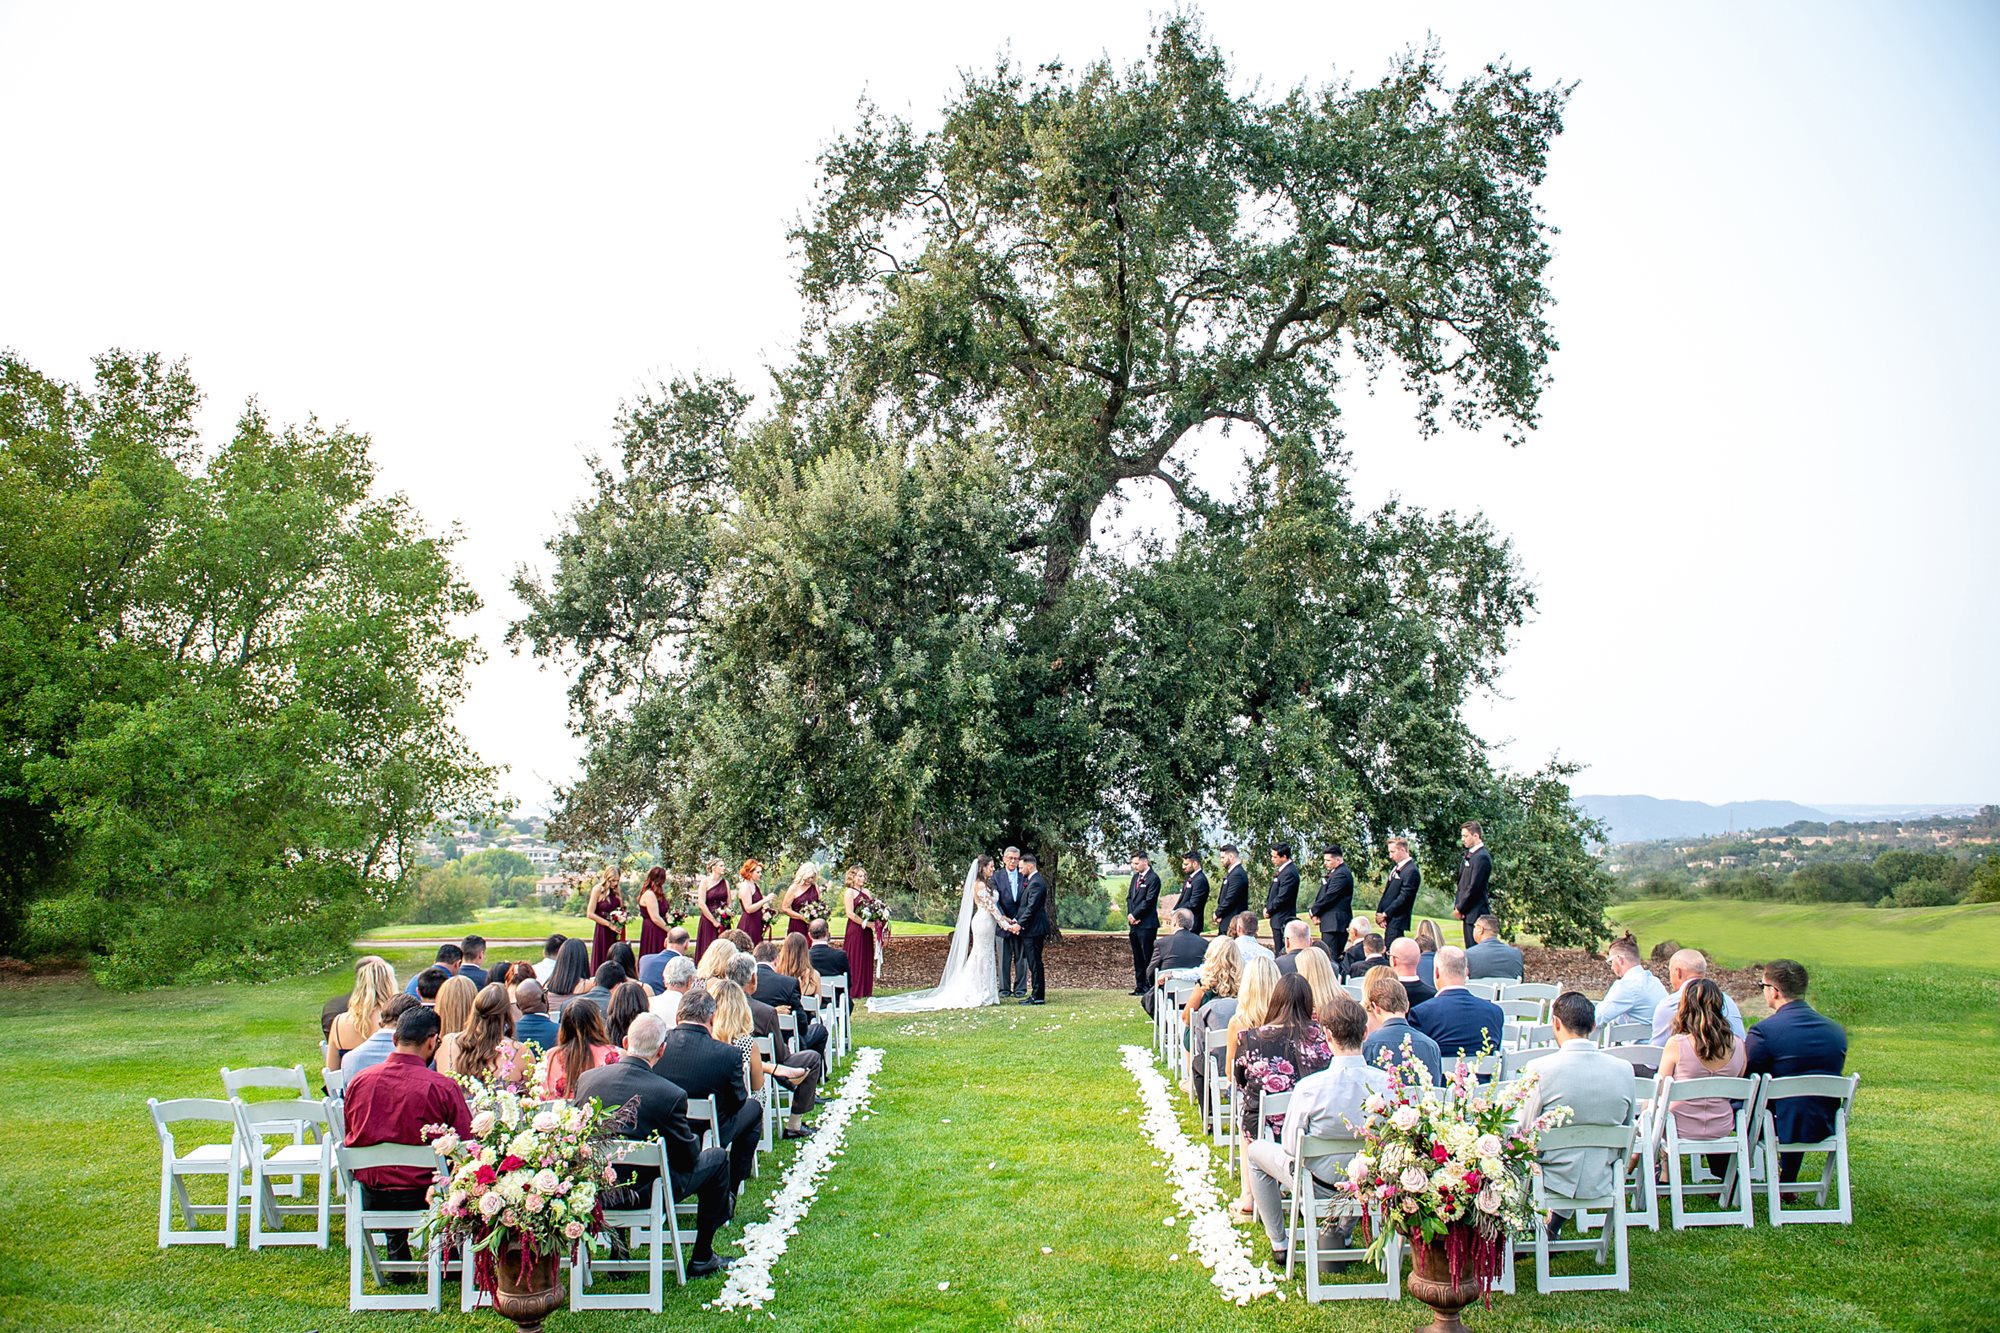 Wedding Services at Serrano Country Club in El Dorado Hills, CA.